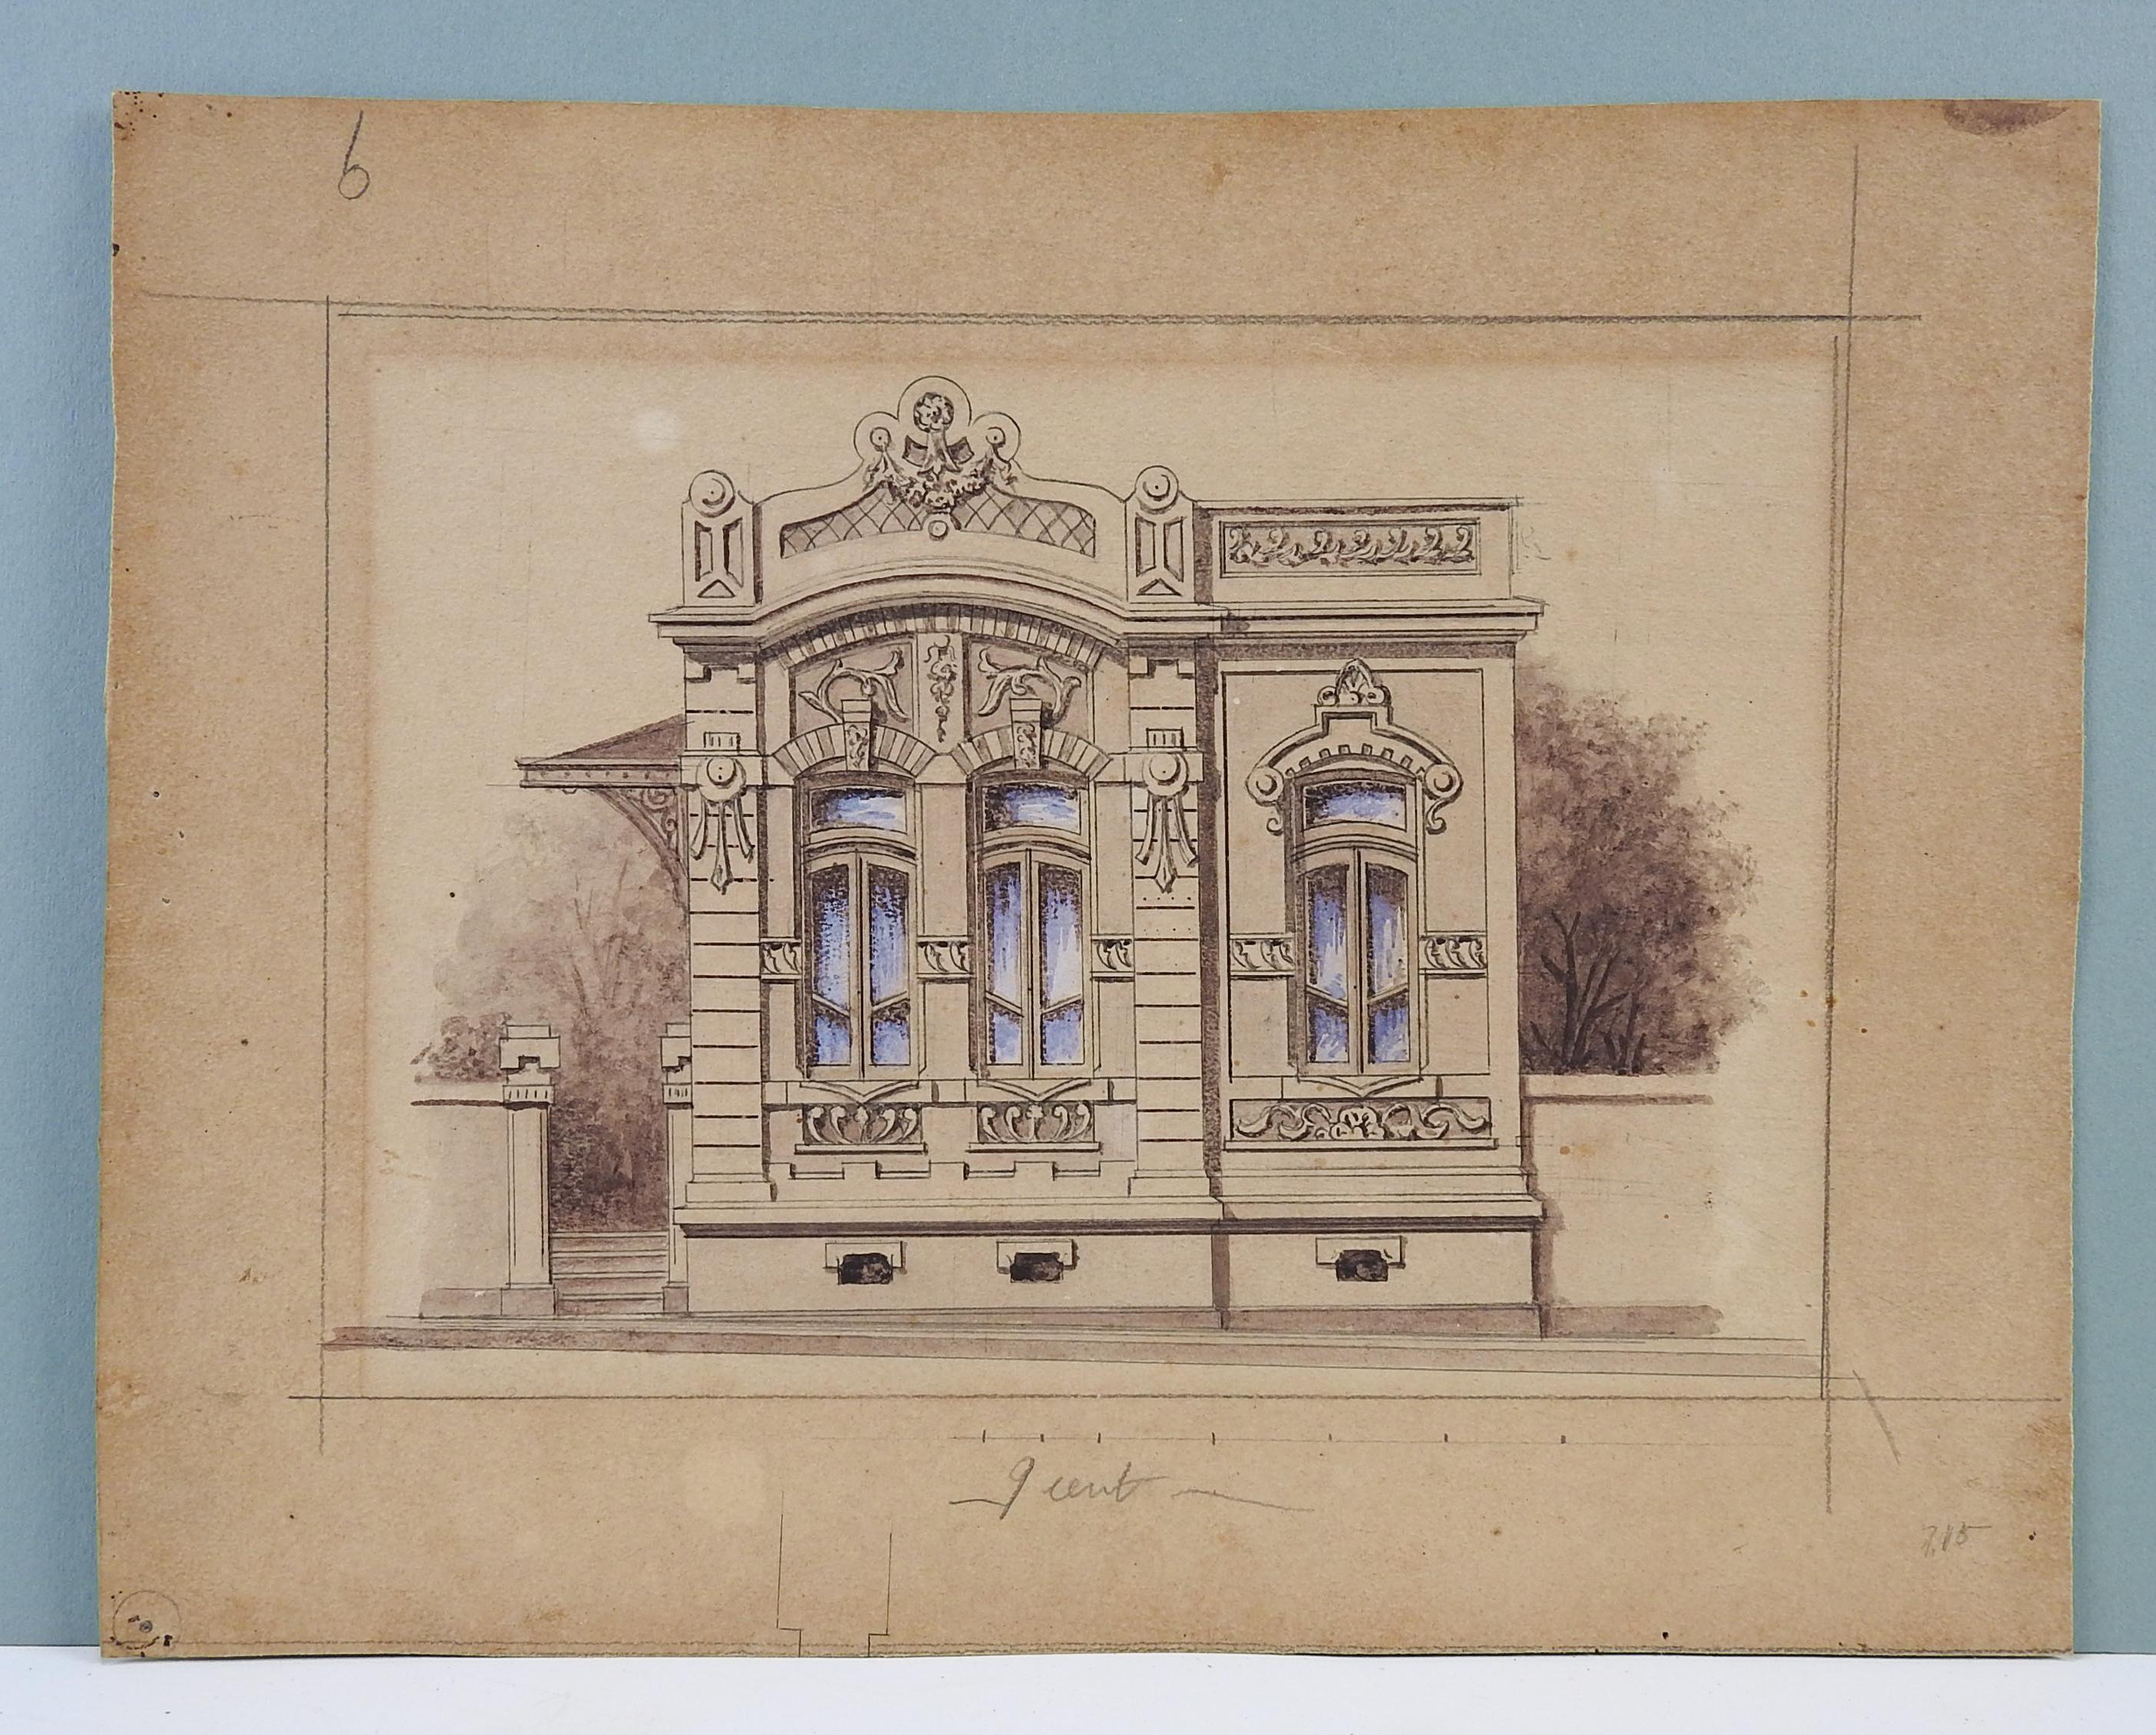 Rendu architectural à l'aquarelle, à la gouache et au crayon sur papier par Luiz Olivieri Italie/Brésil, vers 1900. Non signée. Non encadré, vieillissement, usure des bords.